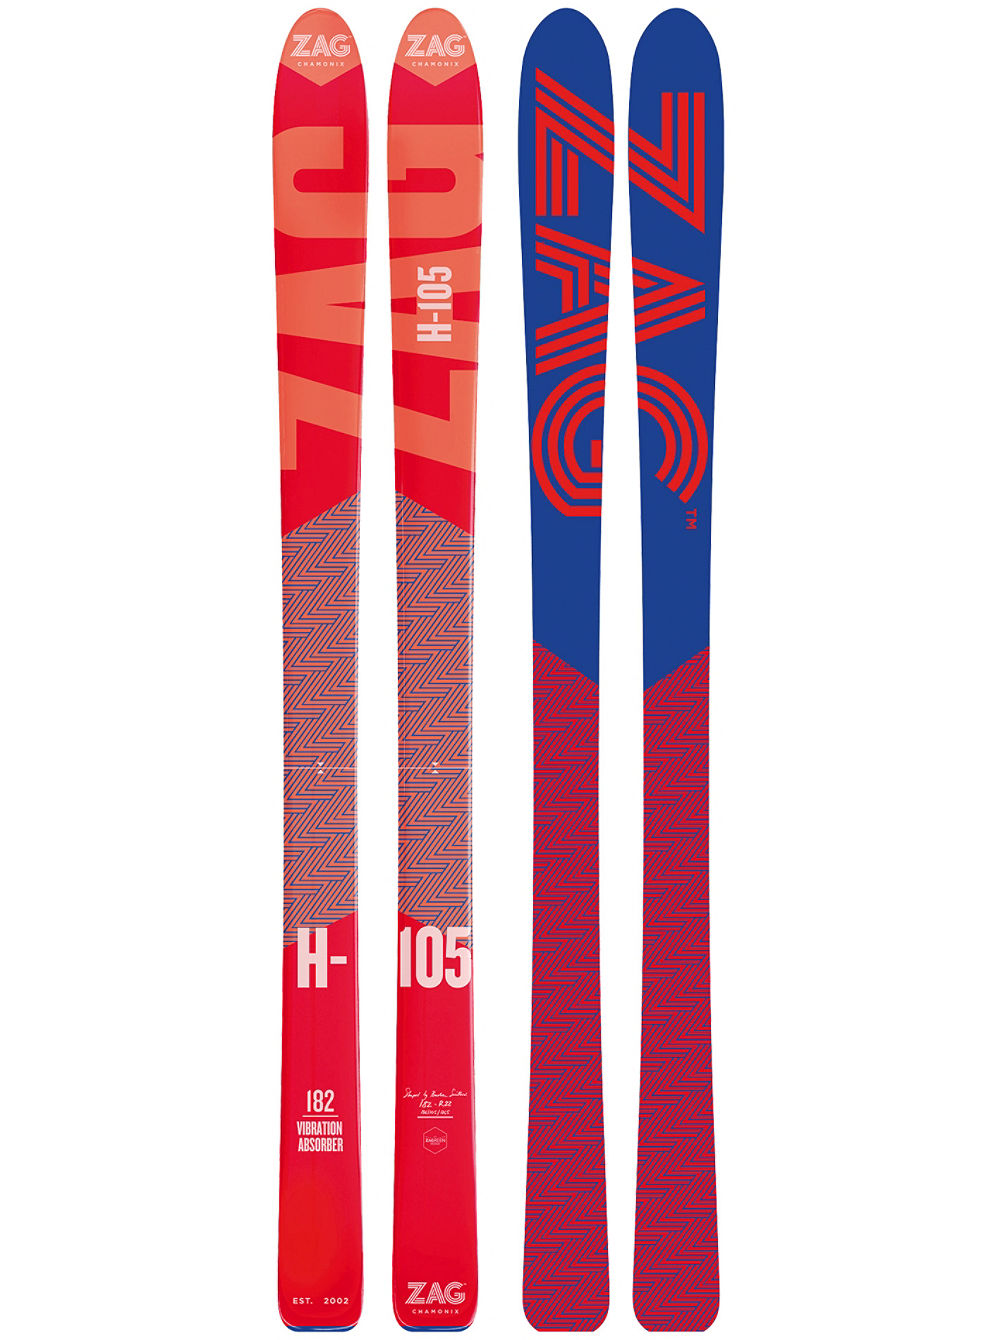 H-105 176 2019 Skis